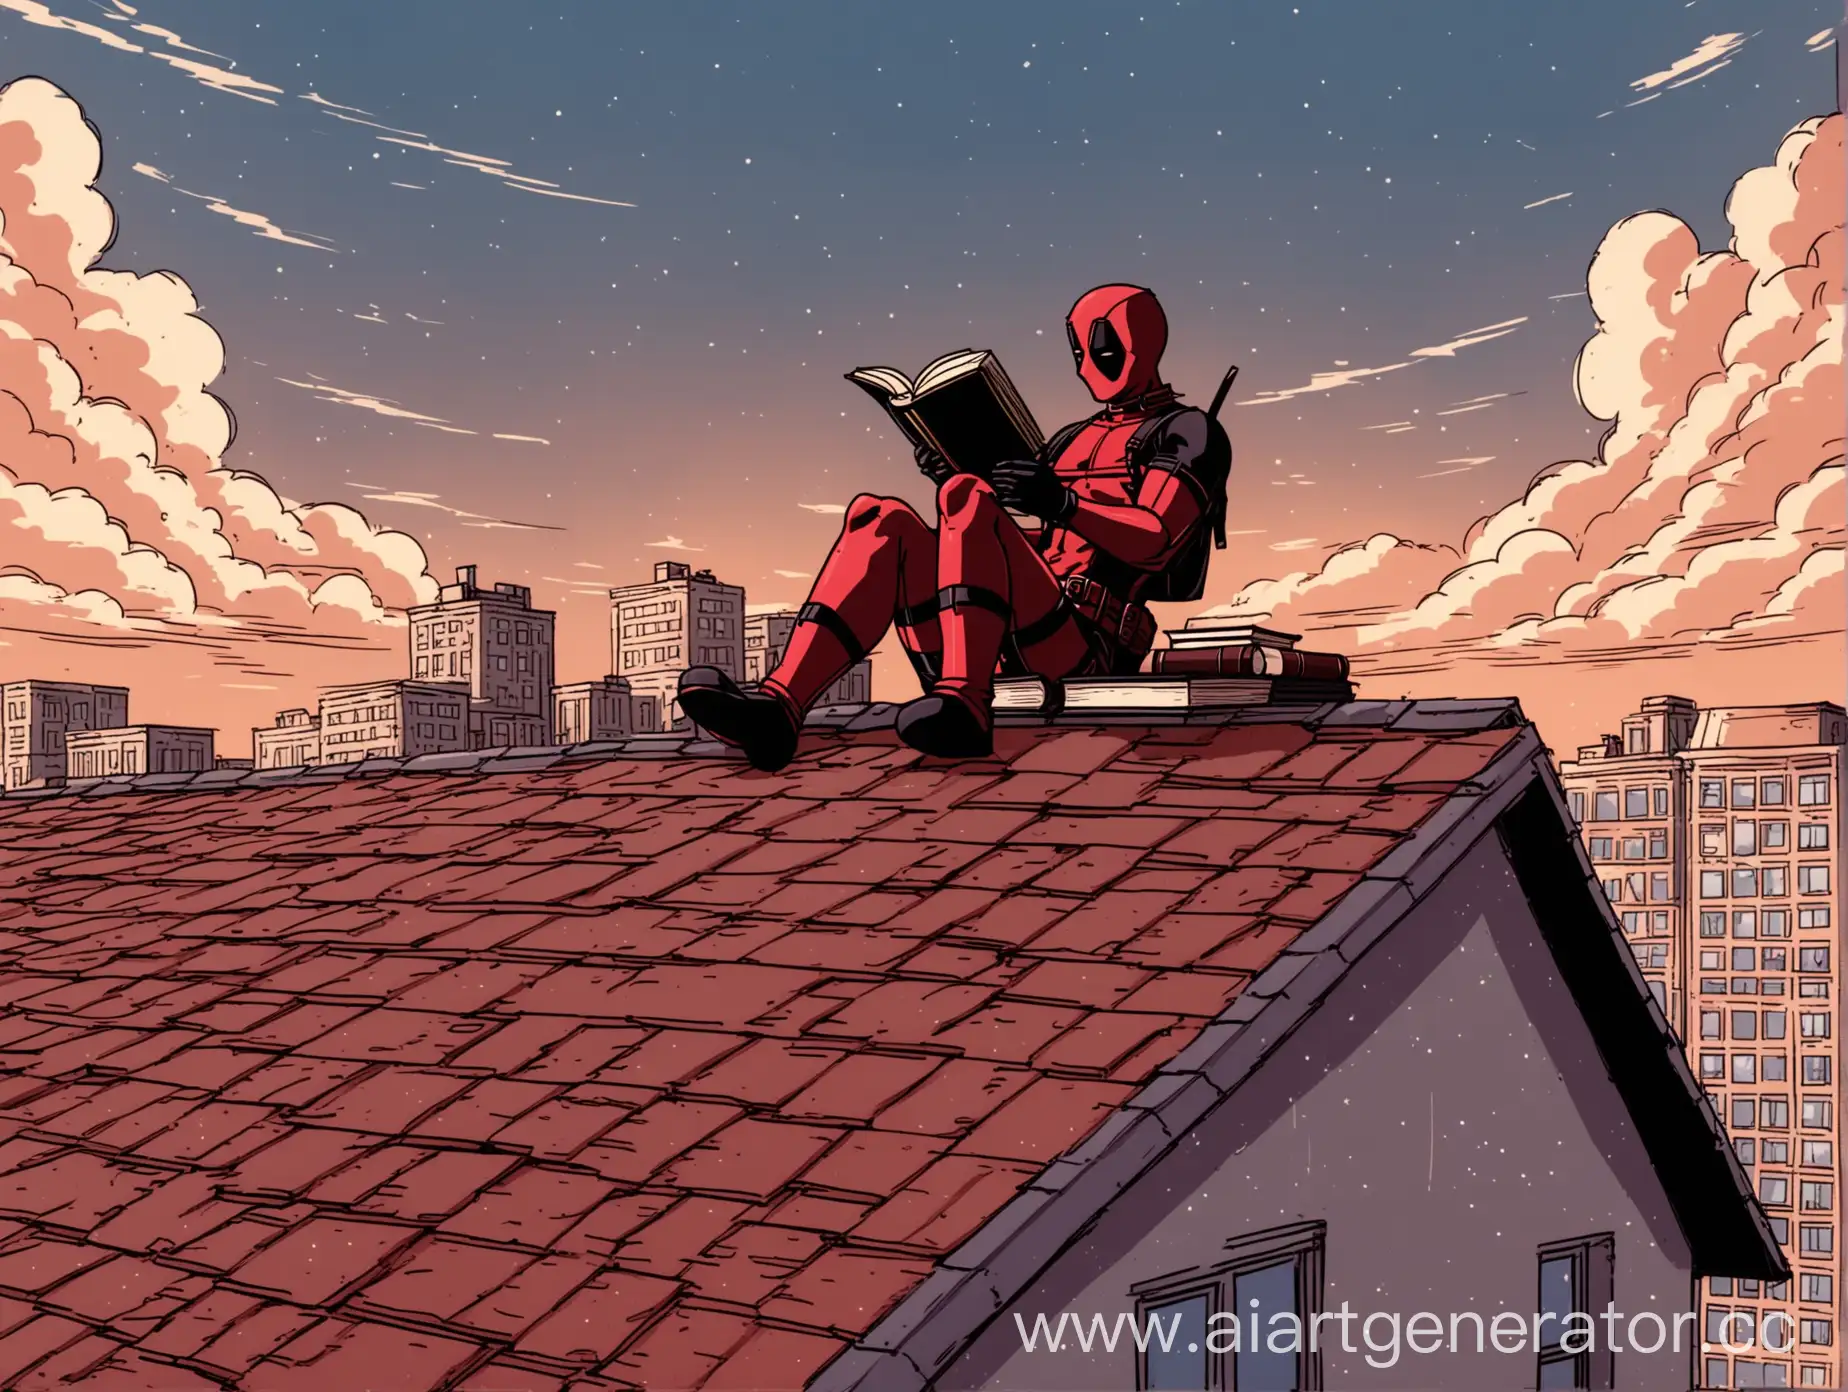 дедпул лежит на крыше здания и читает книгу, на фоне неба в стиле арт